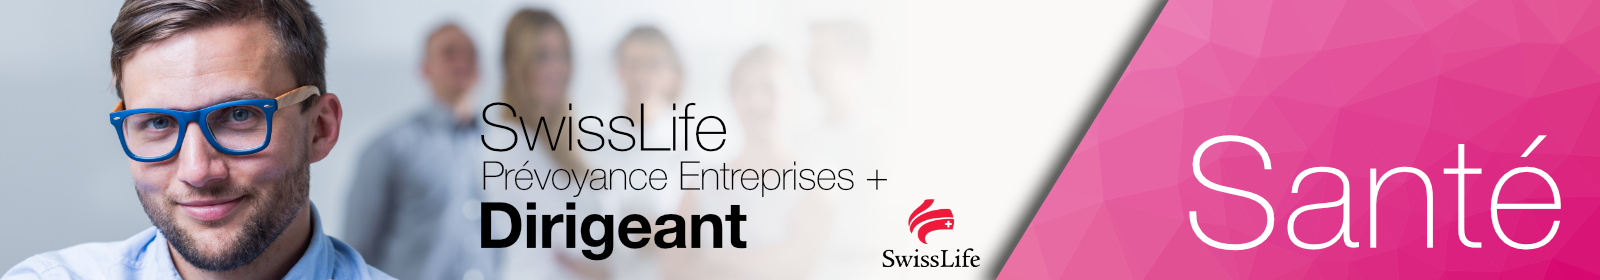 SwissLife Prévoyance Entreprises + Dirigeant